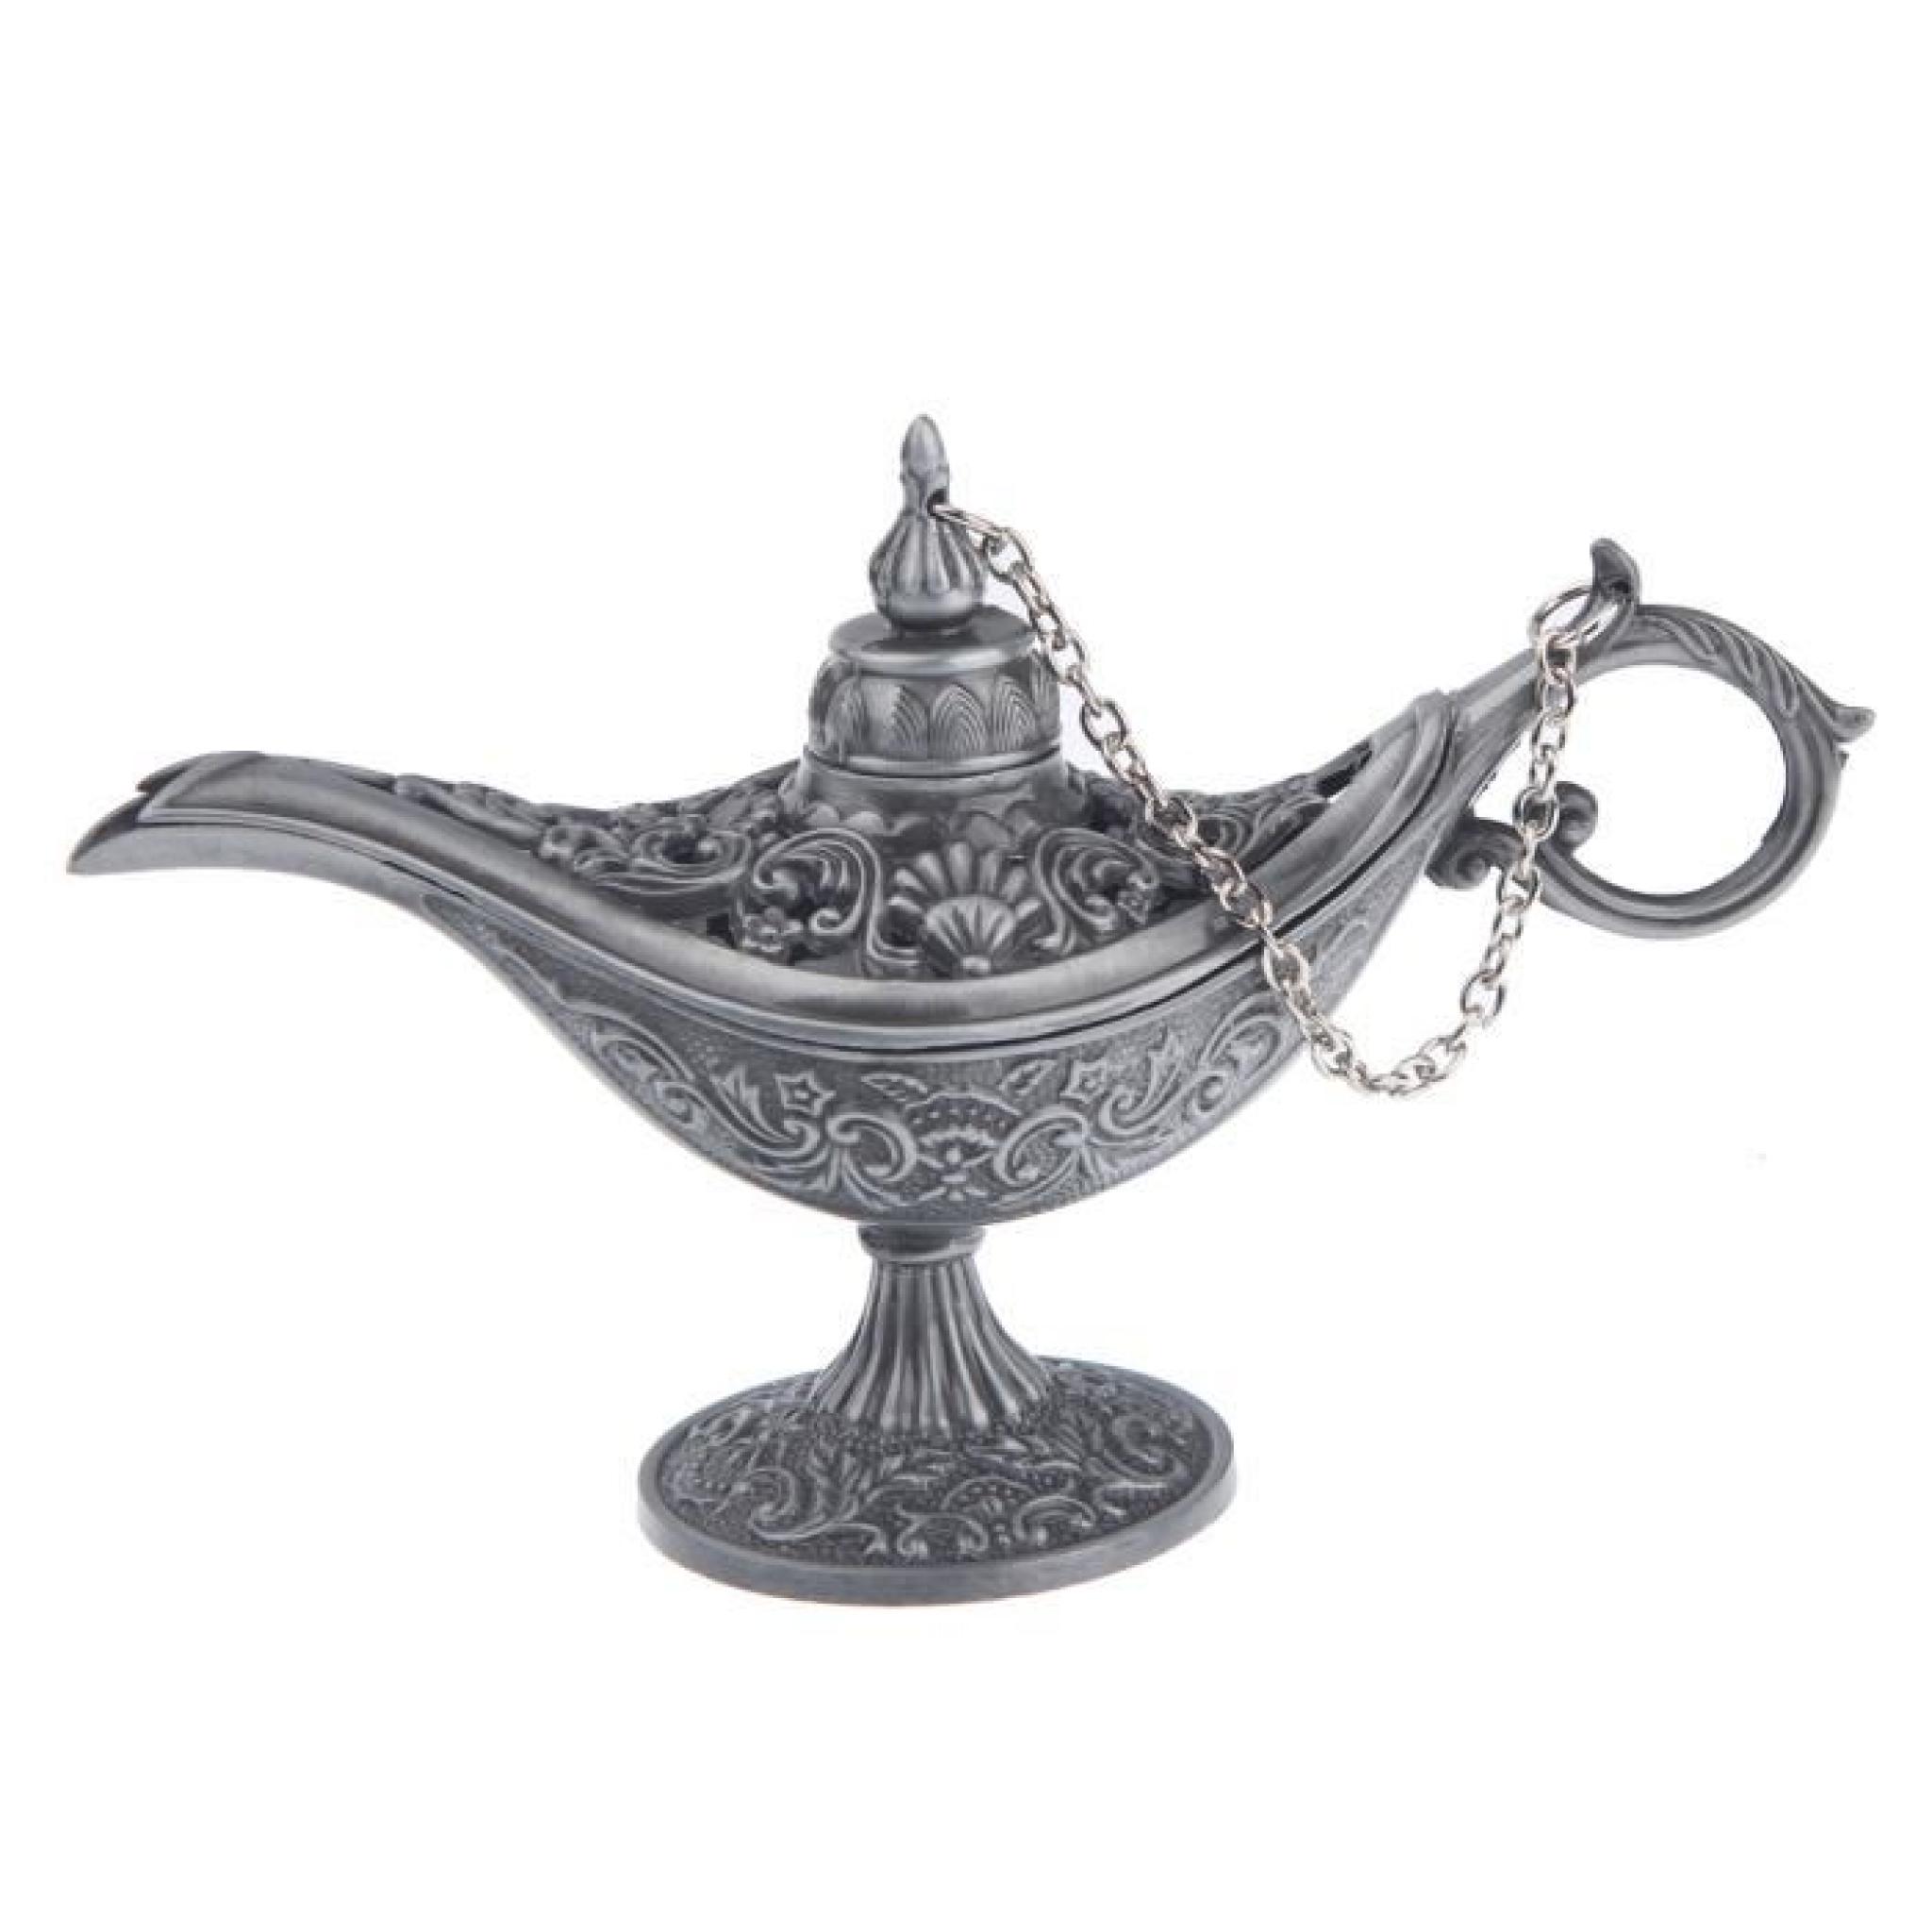 Lampe d'Aladdin Collection du Tibet Aladdin Genie vintage rétro classique ornements décoration WFR pas cher